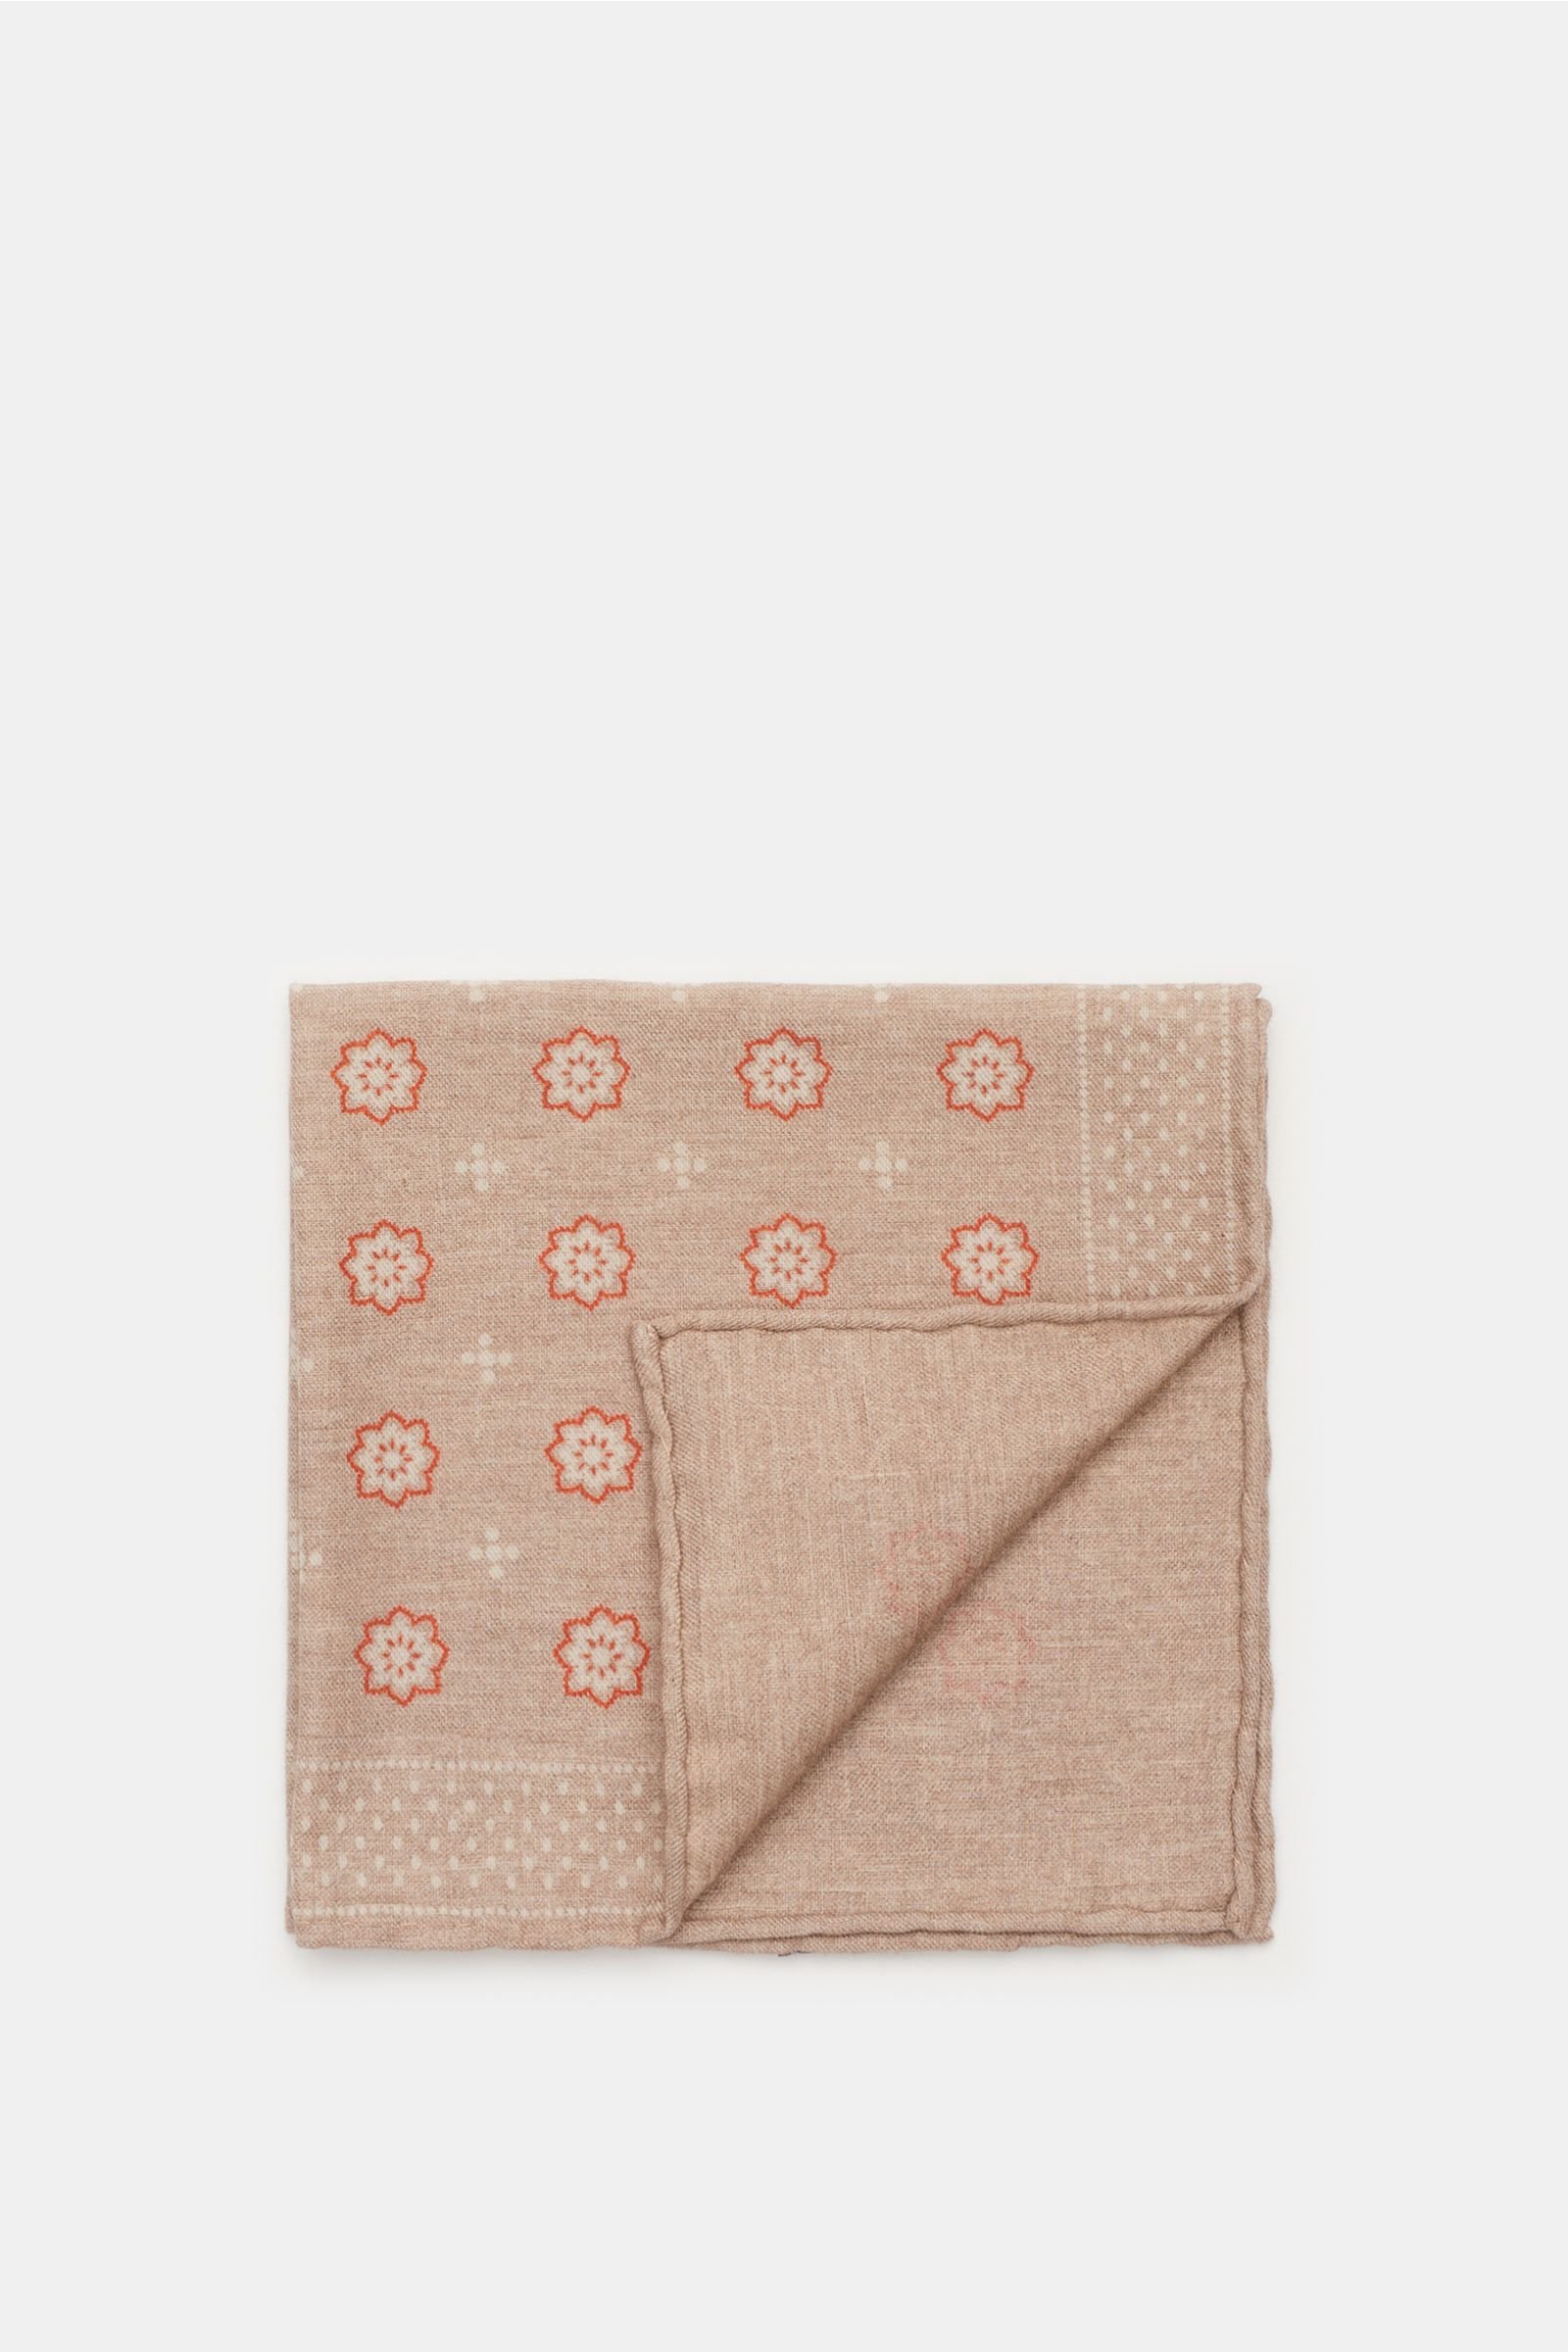 Pocket square beige/orange patterned